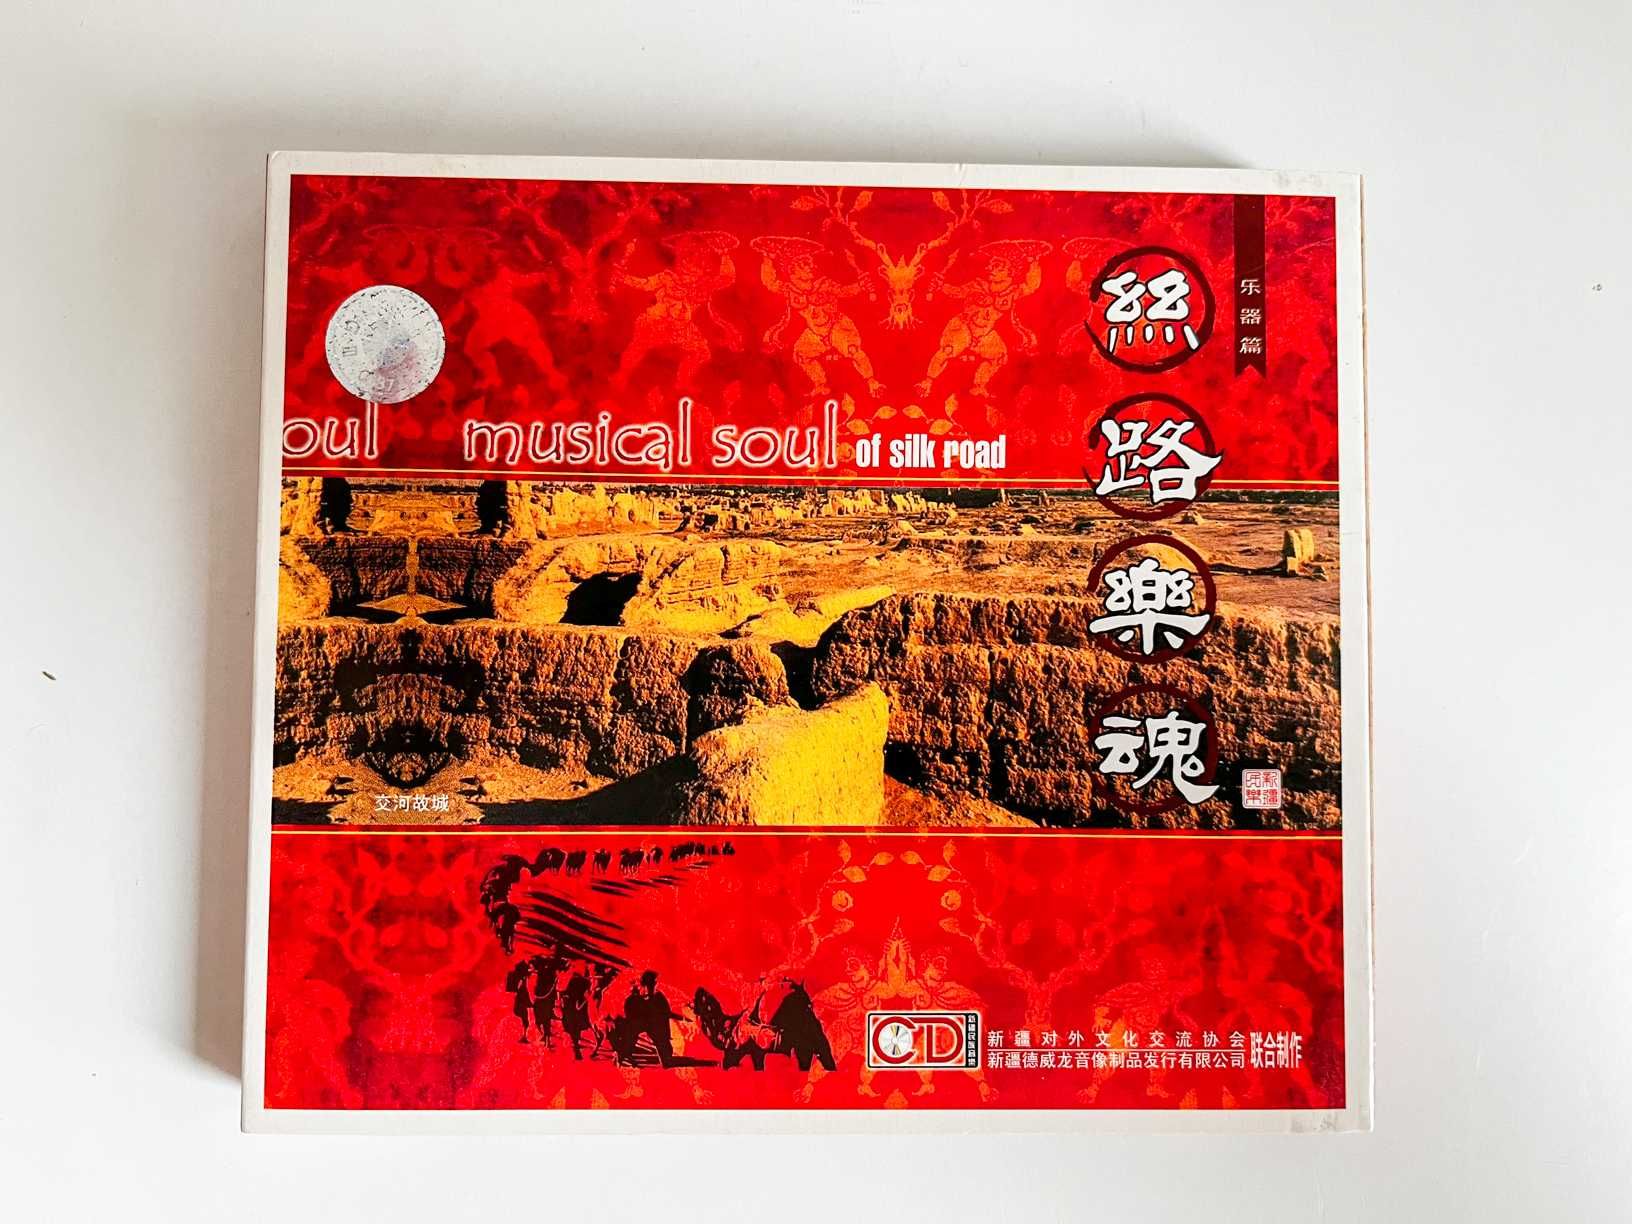 Muzyczna dusza jedwabnego szlaku - płyta CD